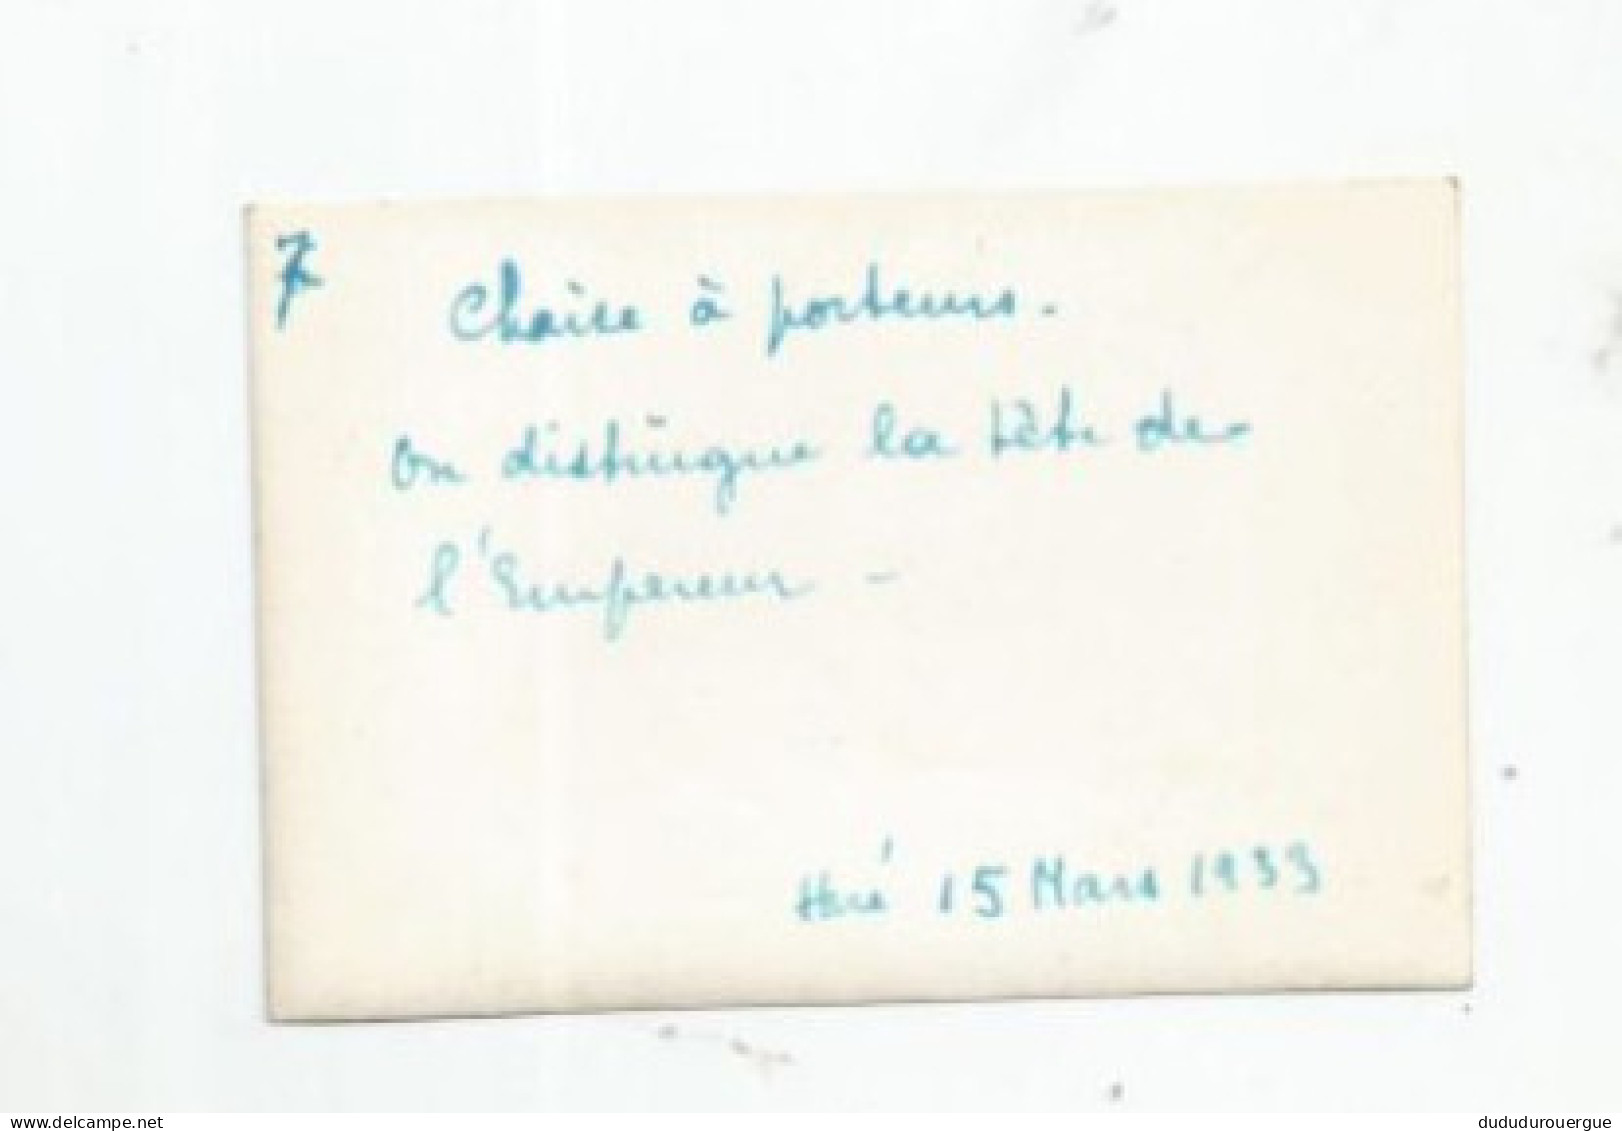 VIETNAM , INDOCHINE , HUE LE 15 MARS 1933 : CHAISE A PORTEURS , ON DISTINGUE LA TETE DE L EMPEREUR - Asie